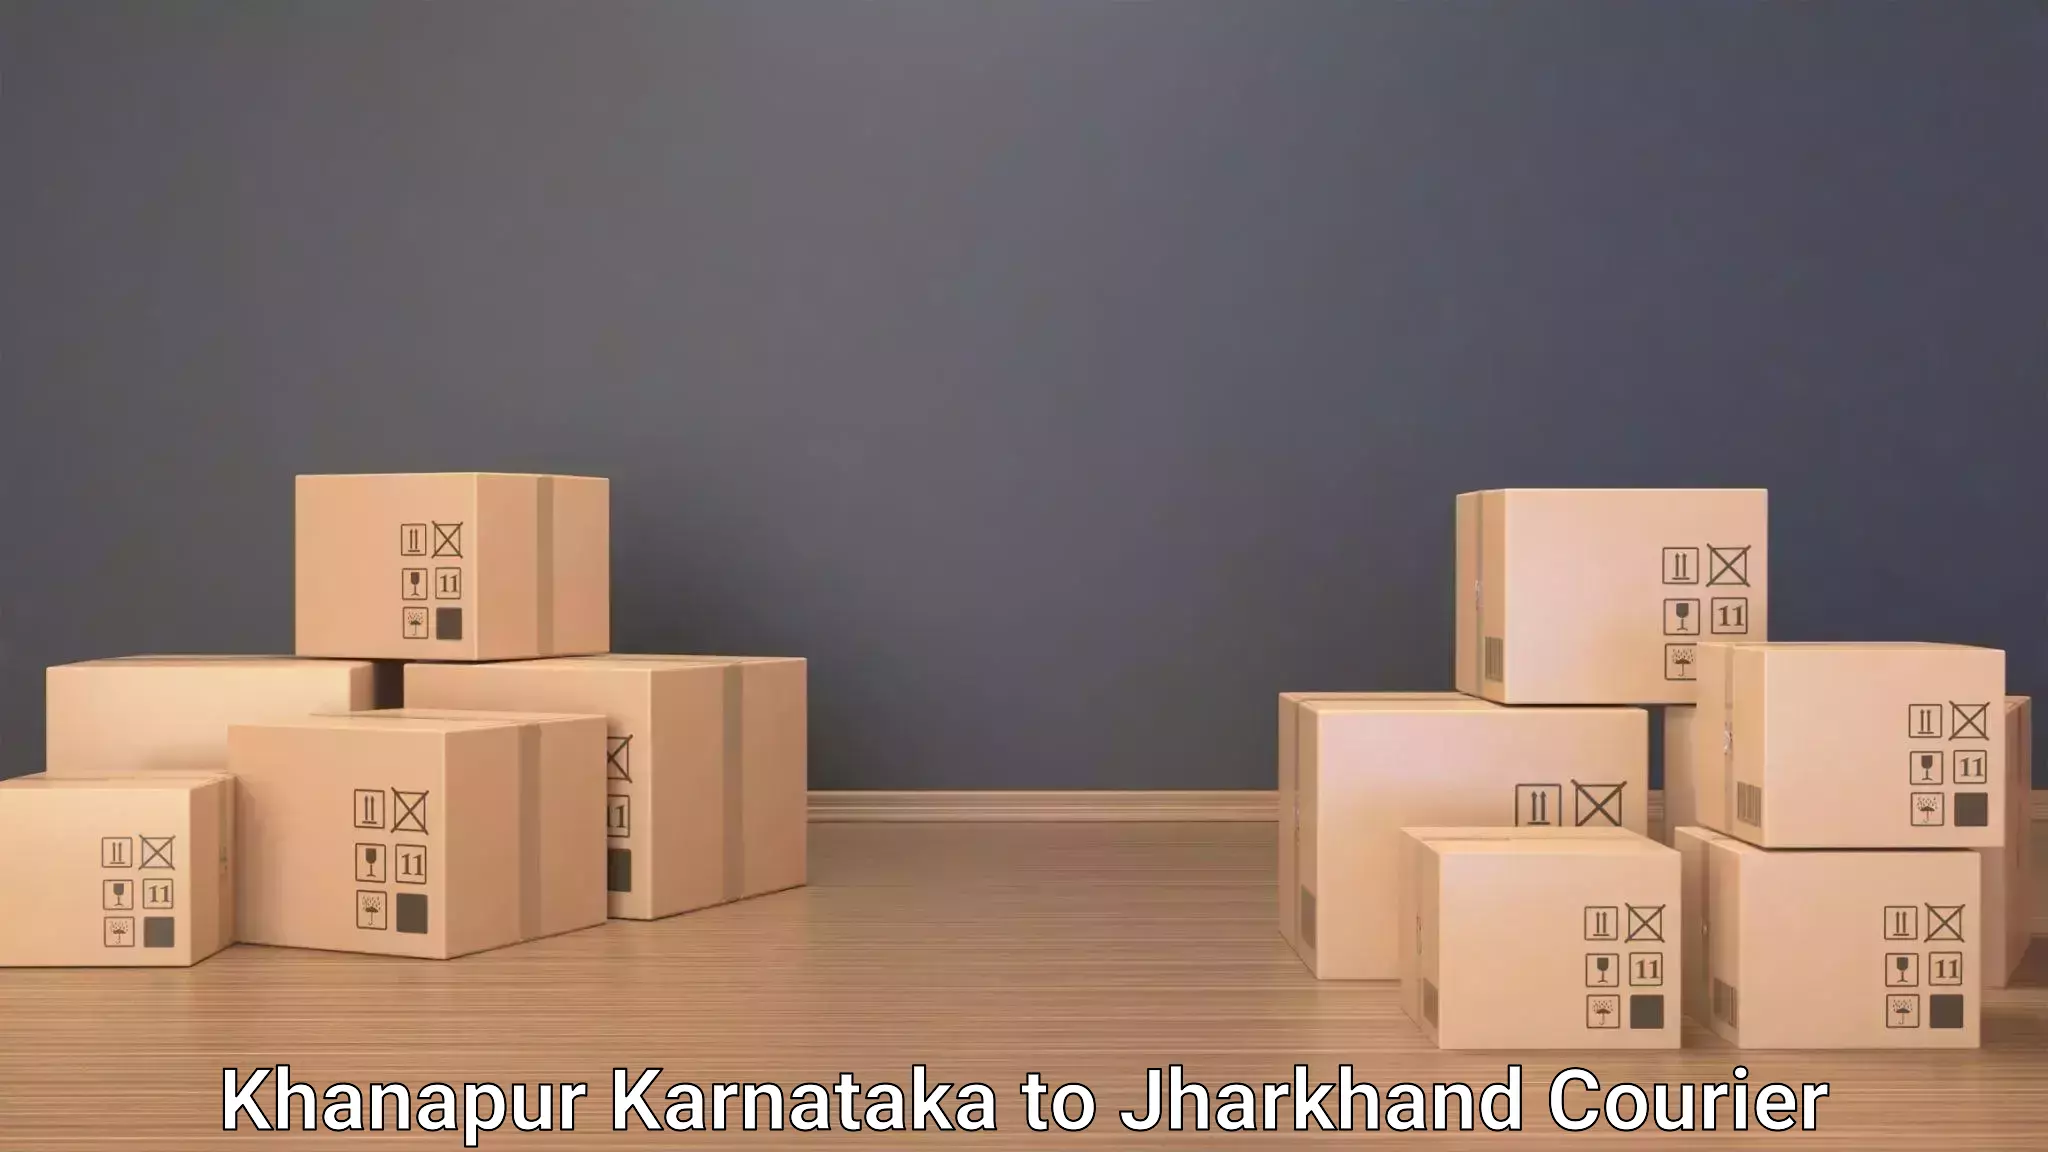 Luggage transit service Khanapur Karnataka to Bokaro